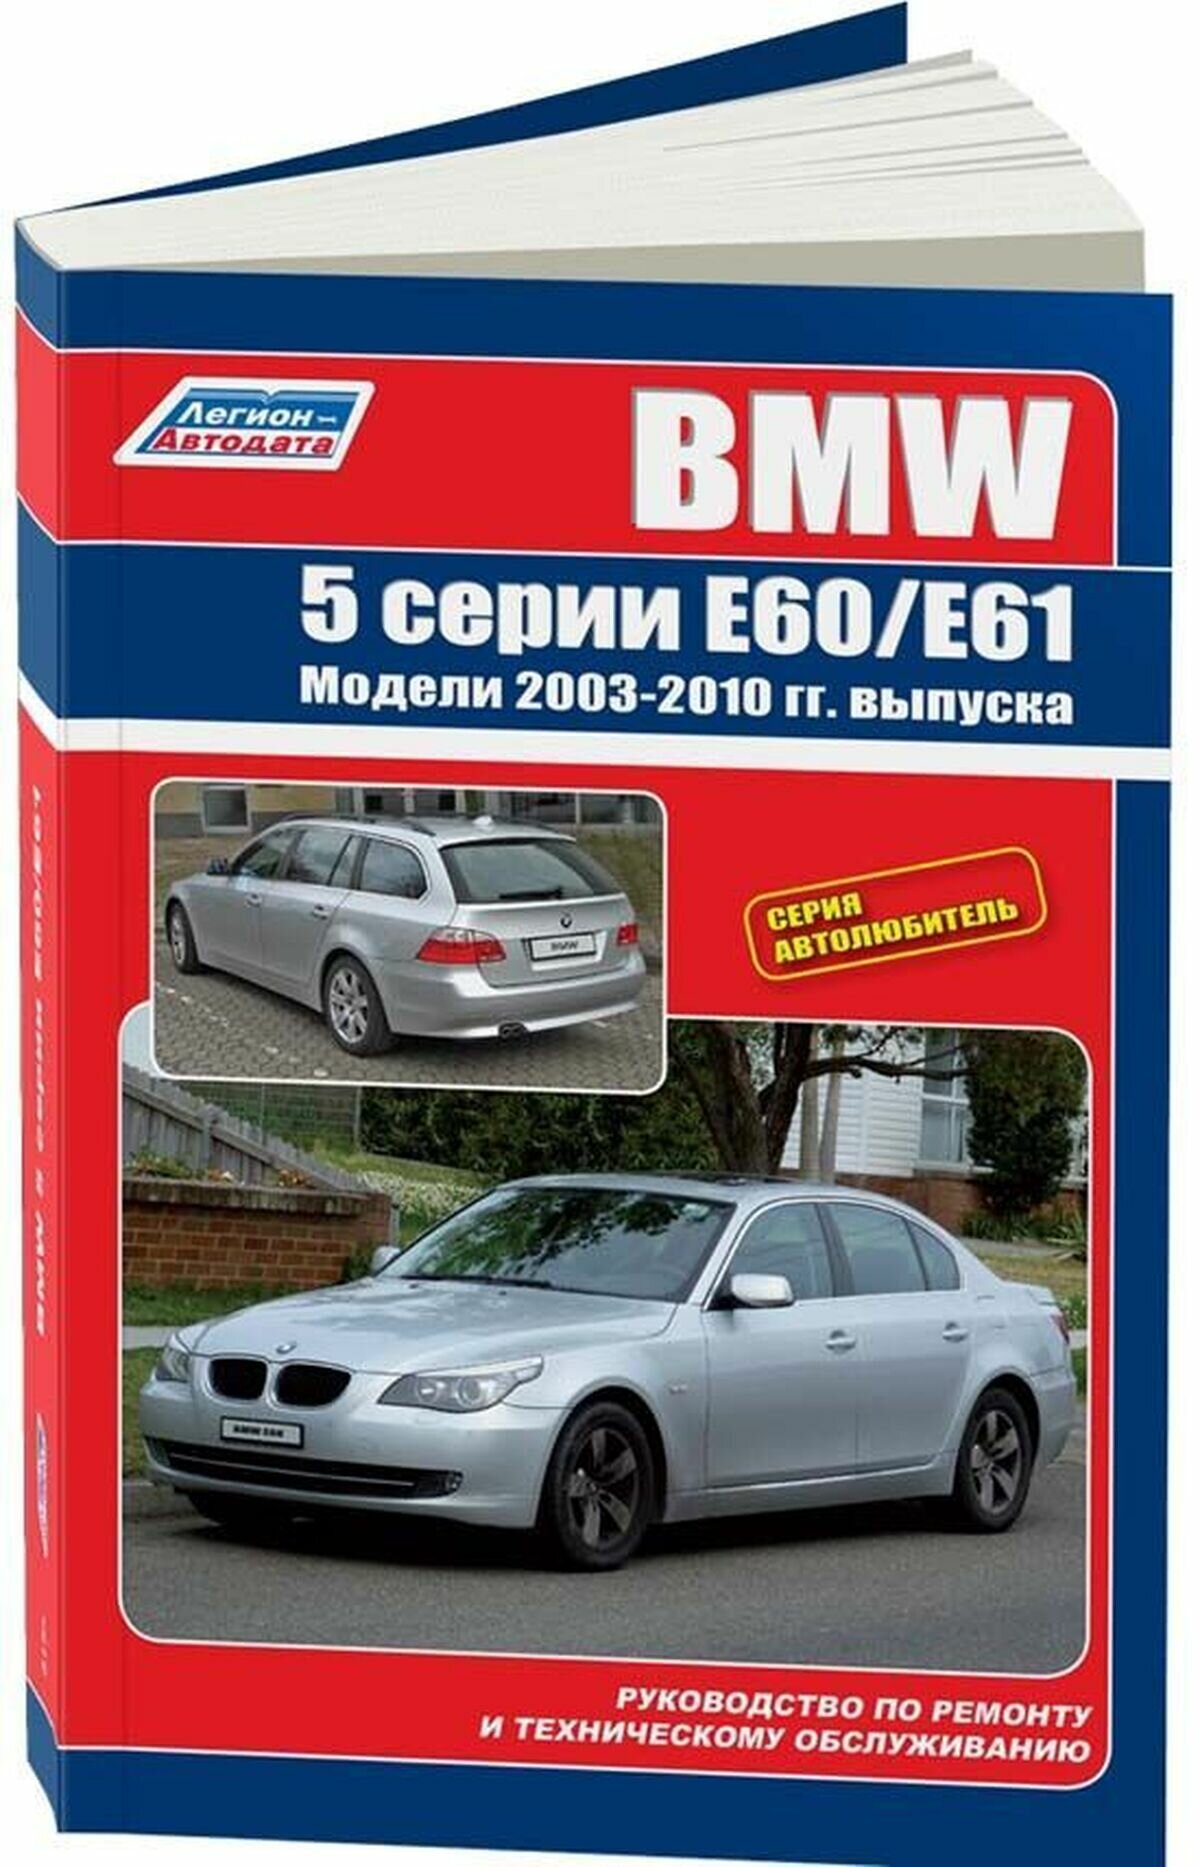 Автокнига: руководство / инструкция по ремонту и эксплуатации BMW (БМВ) 5 серии (E60 / E61) бензин / дизель с 2003 года выпуска, 5-88850-210-3, издательство Легион-Aвтодата